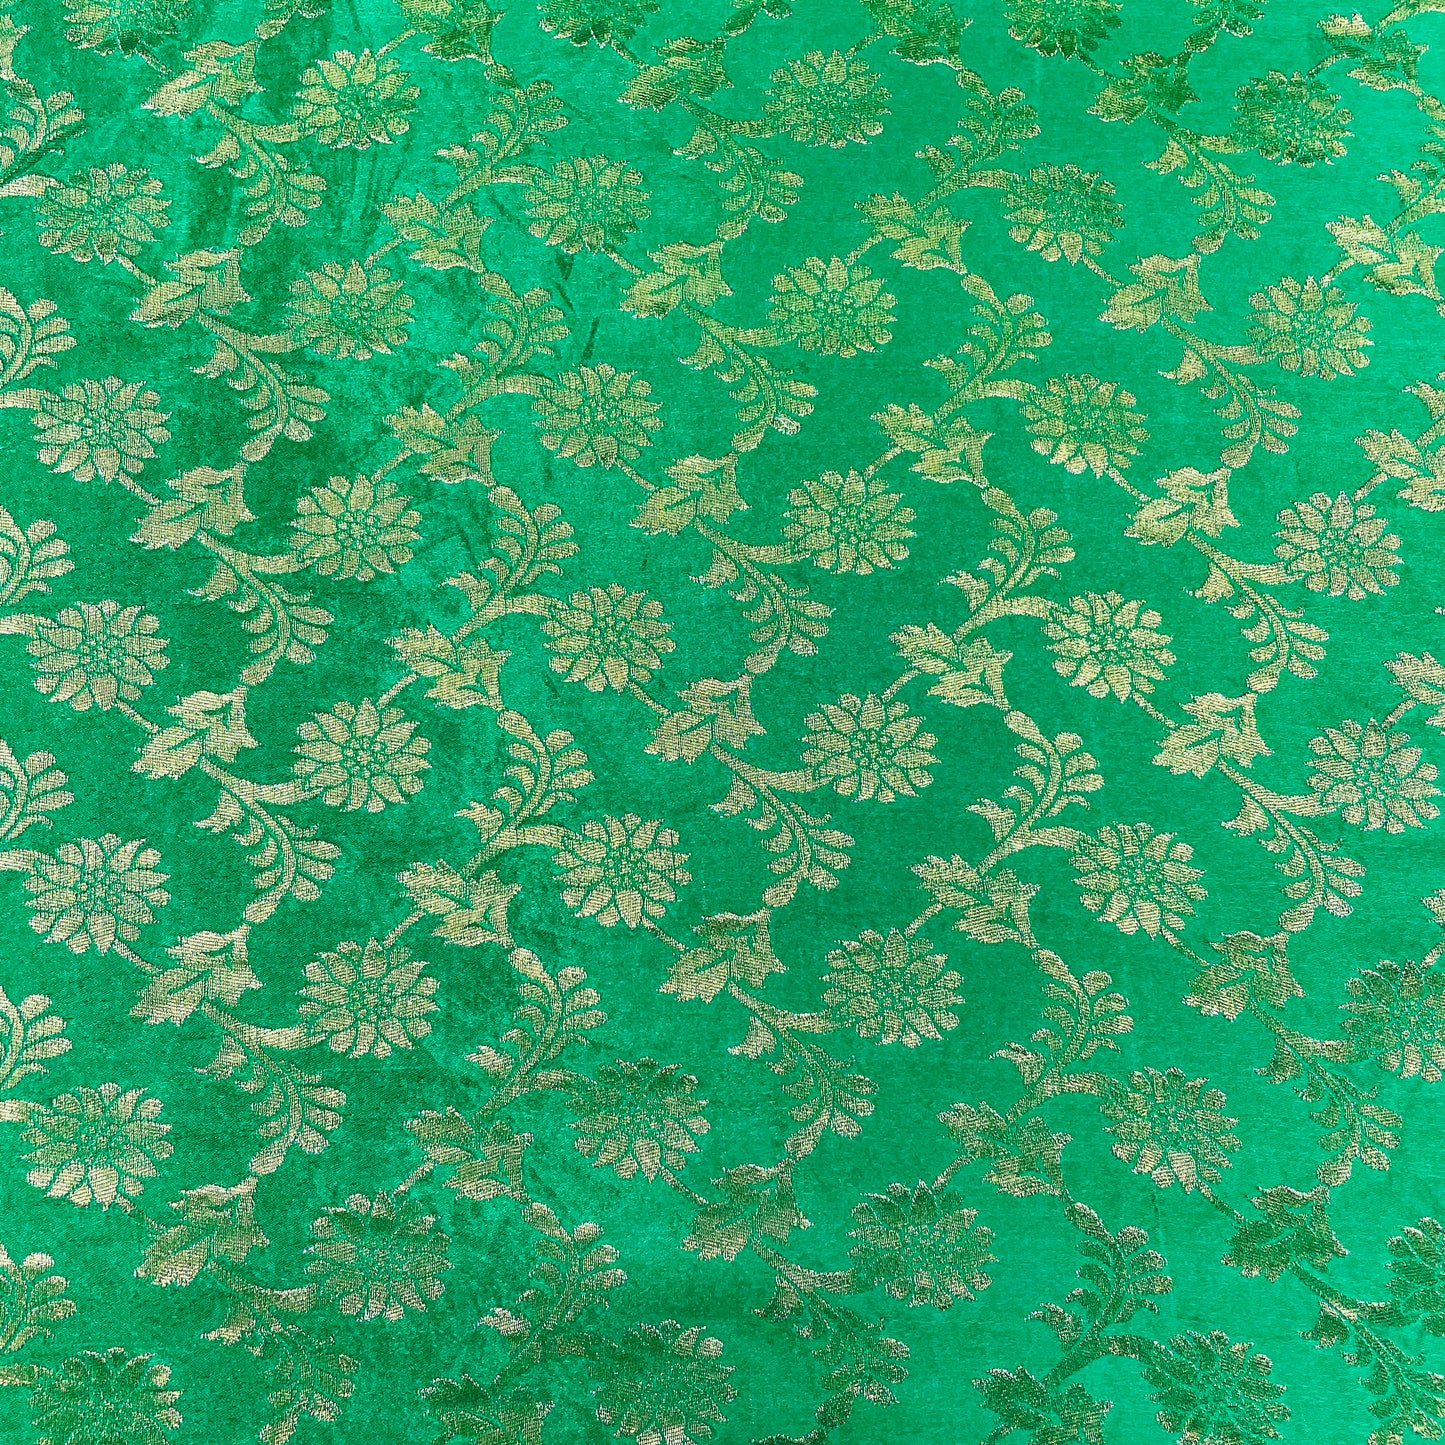 Green With Gold Zari Floral Banarasi Brocade Fabric - TradeUNO